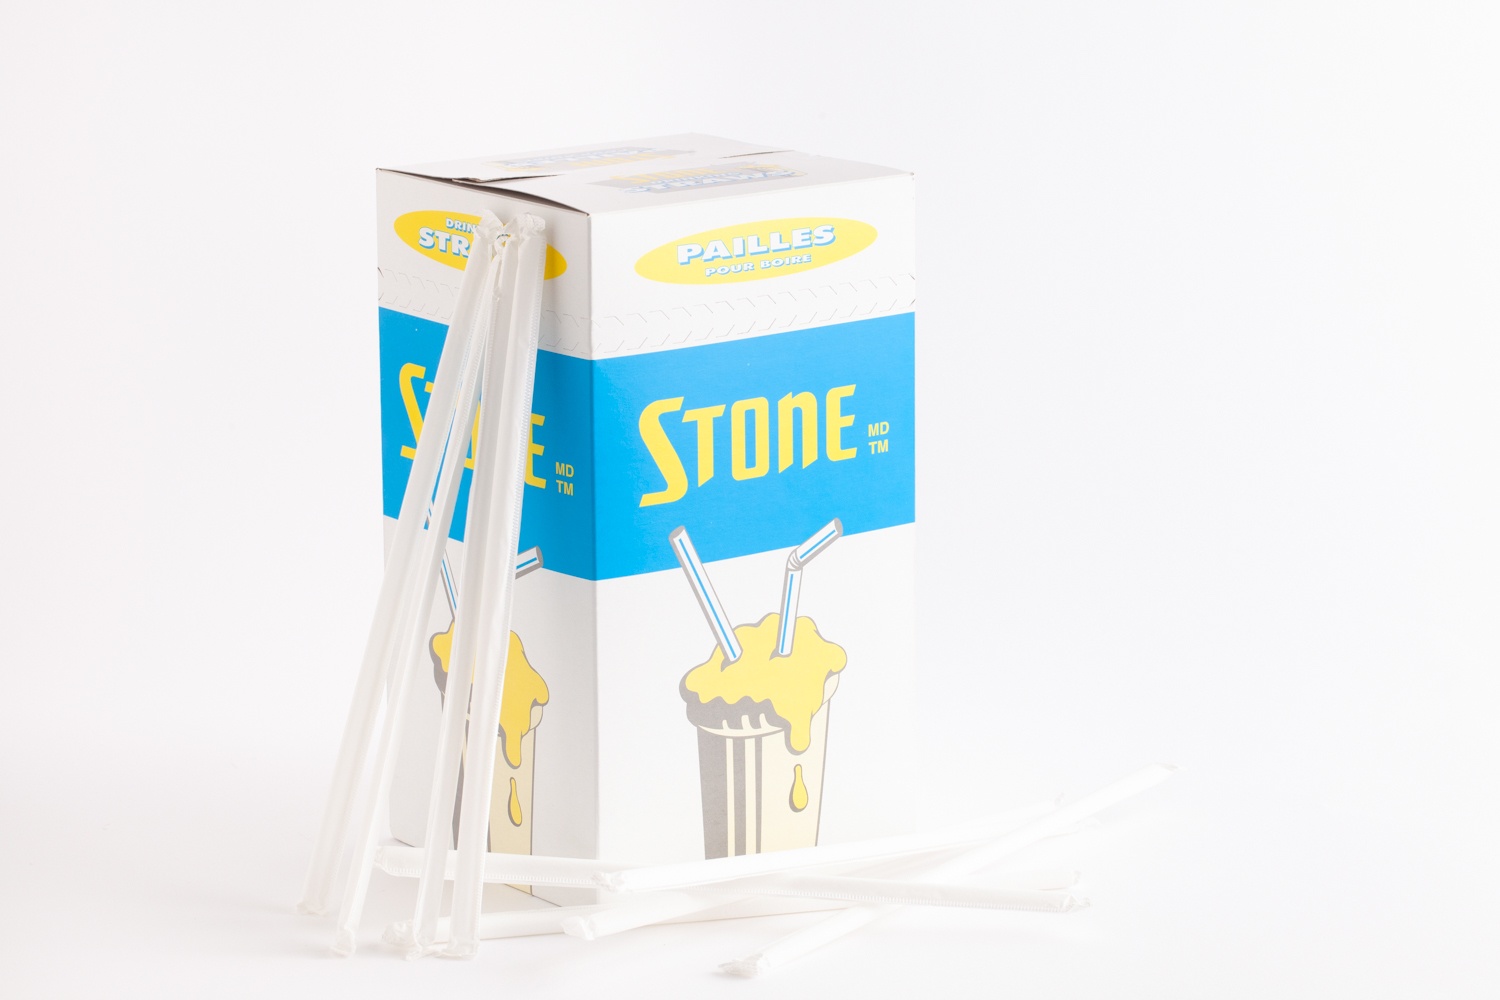 isolated product shot - stone straws box blue